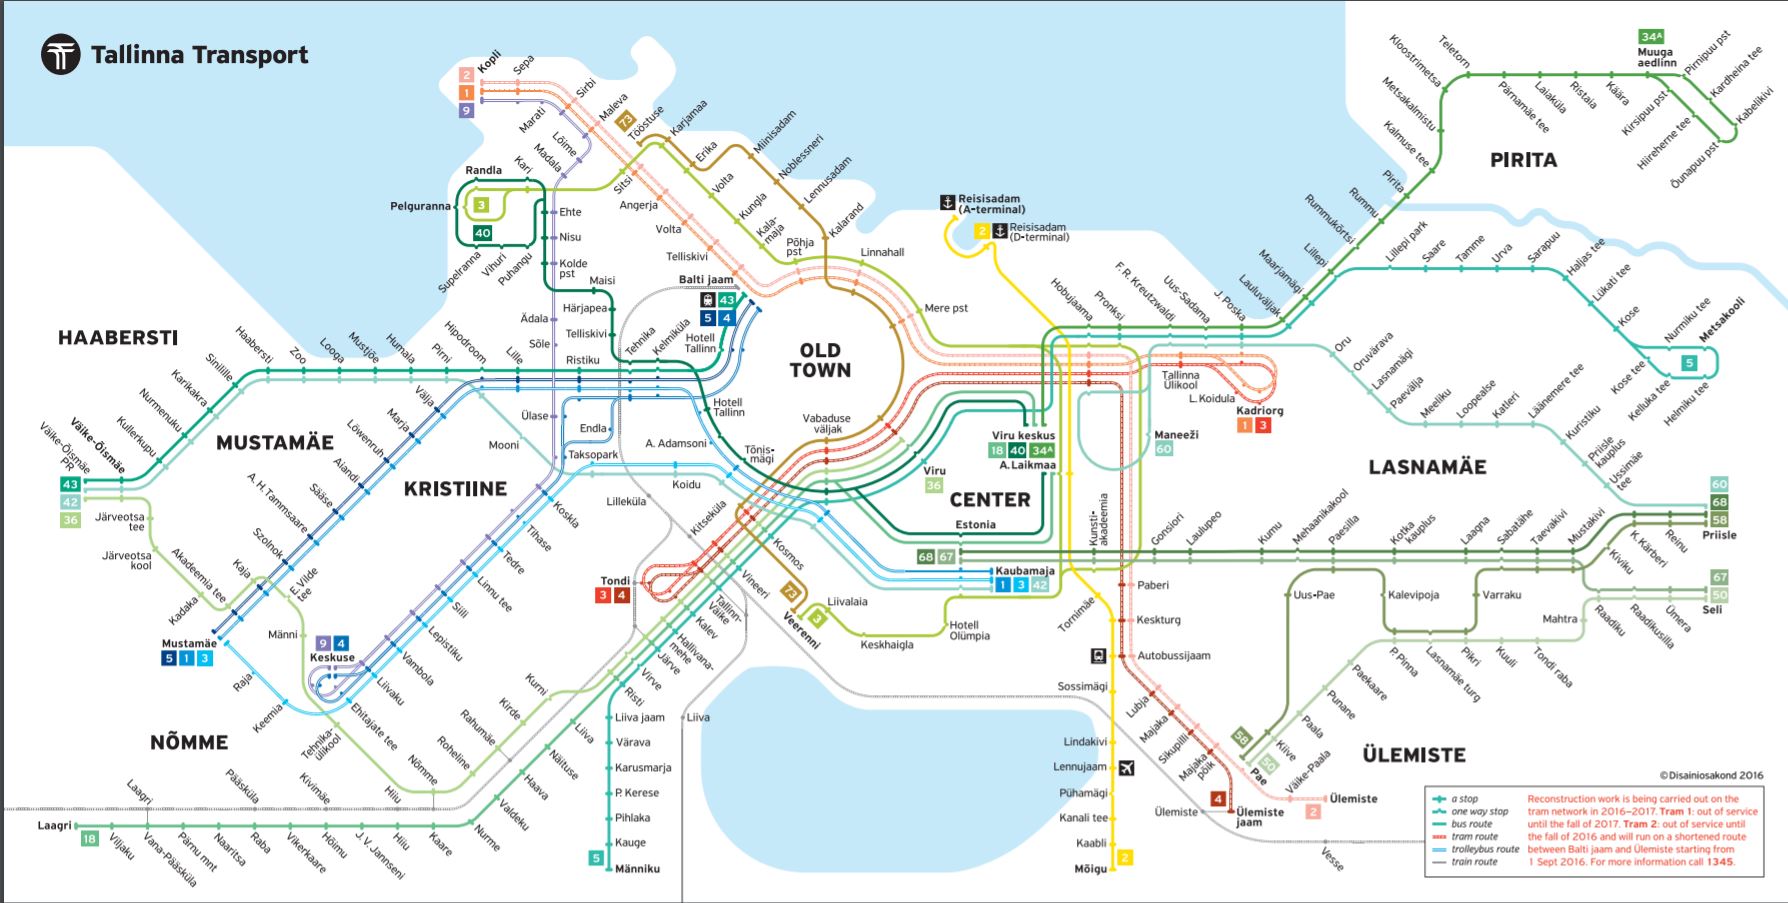 Tallinn Transport Map